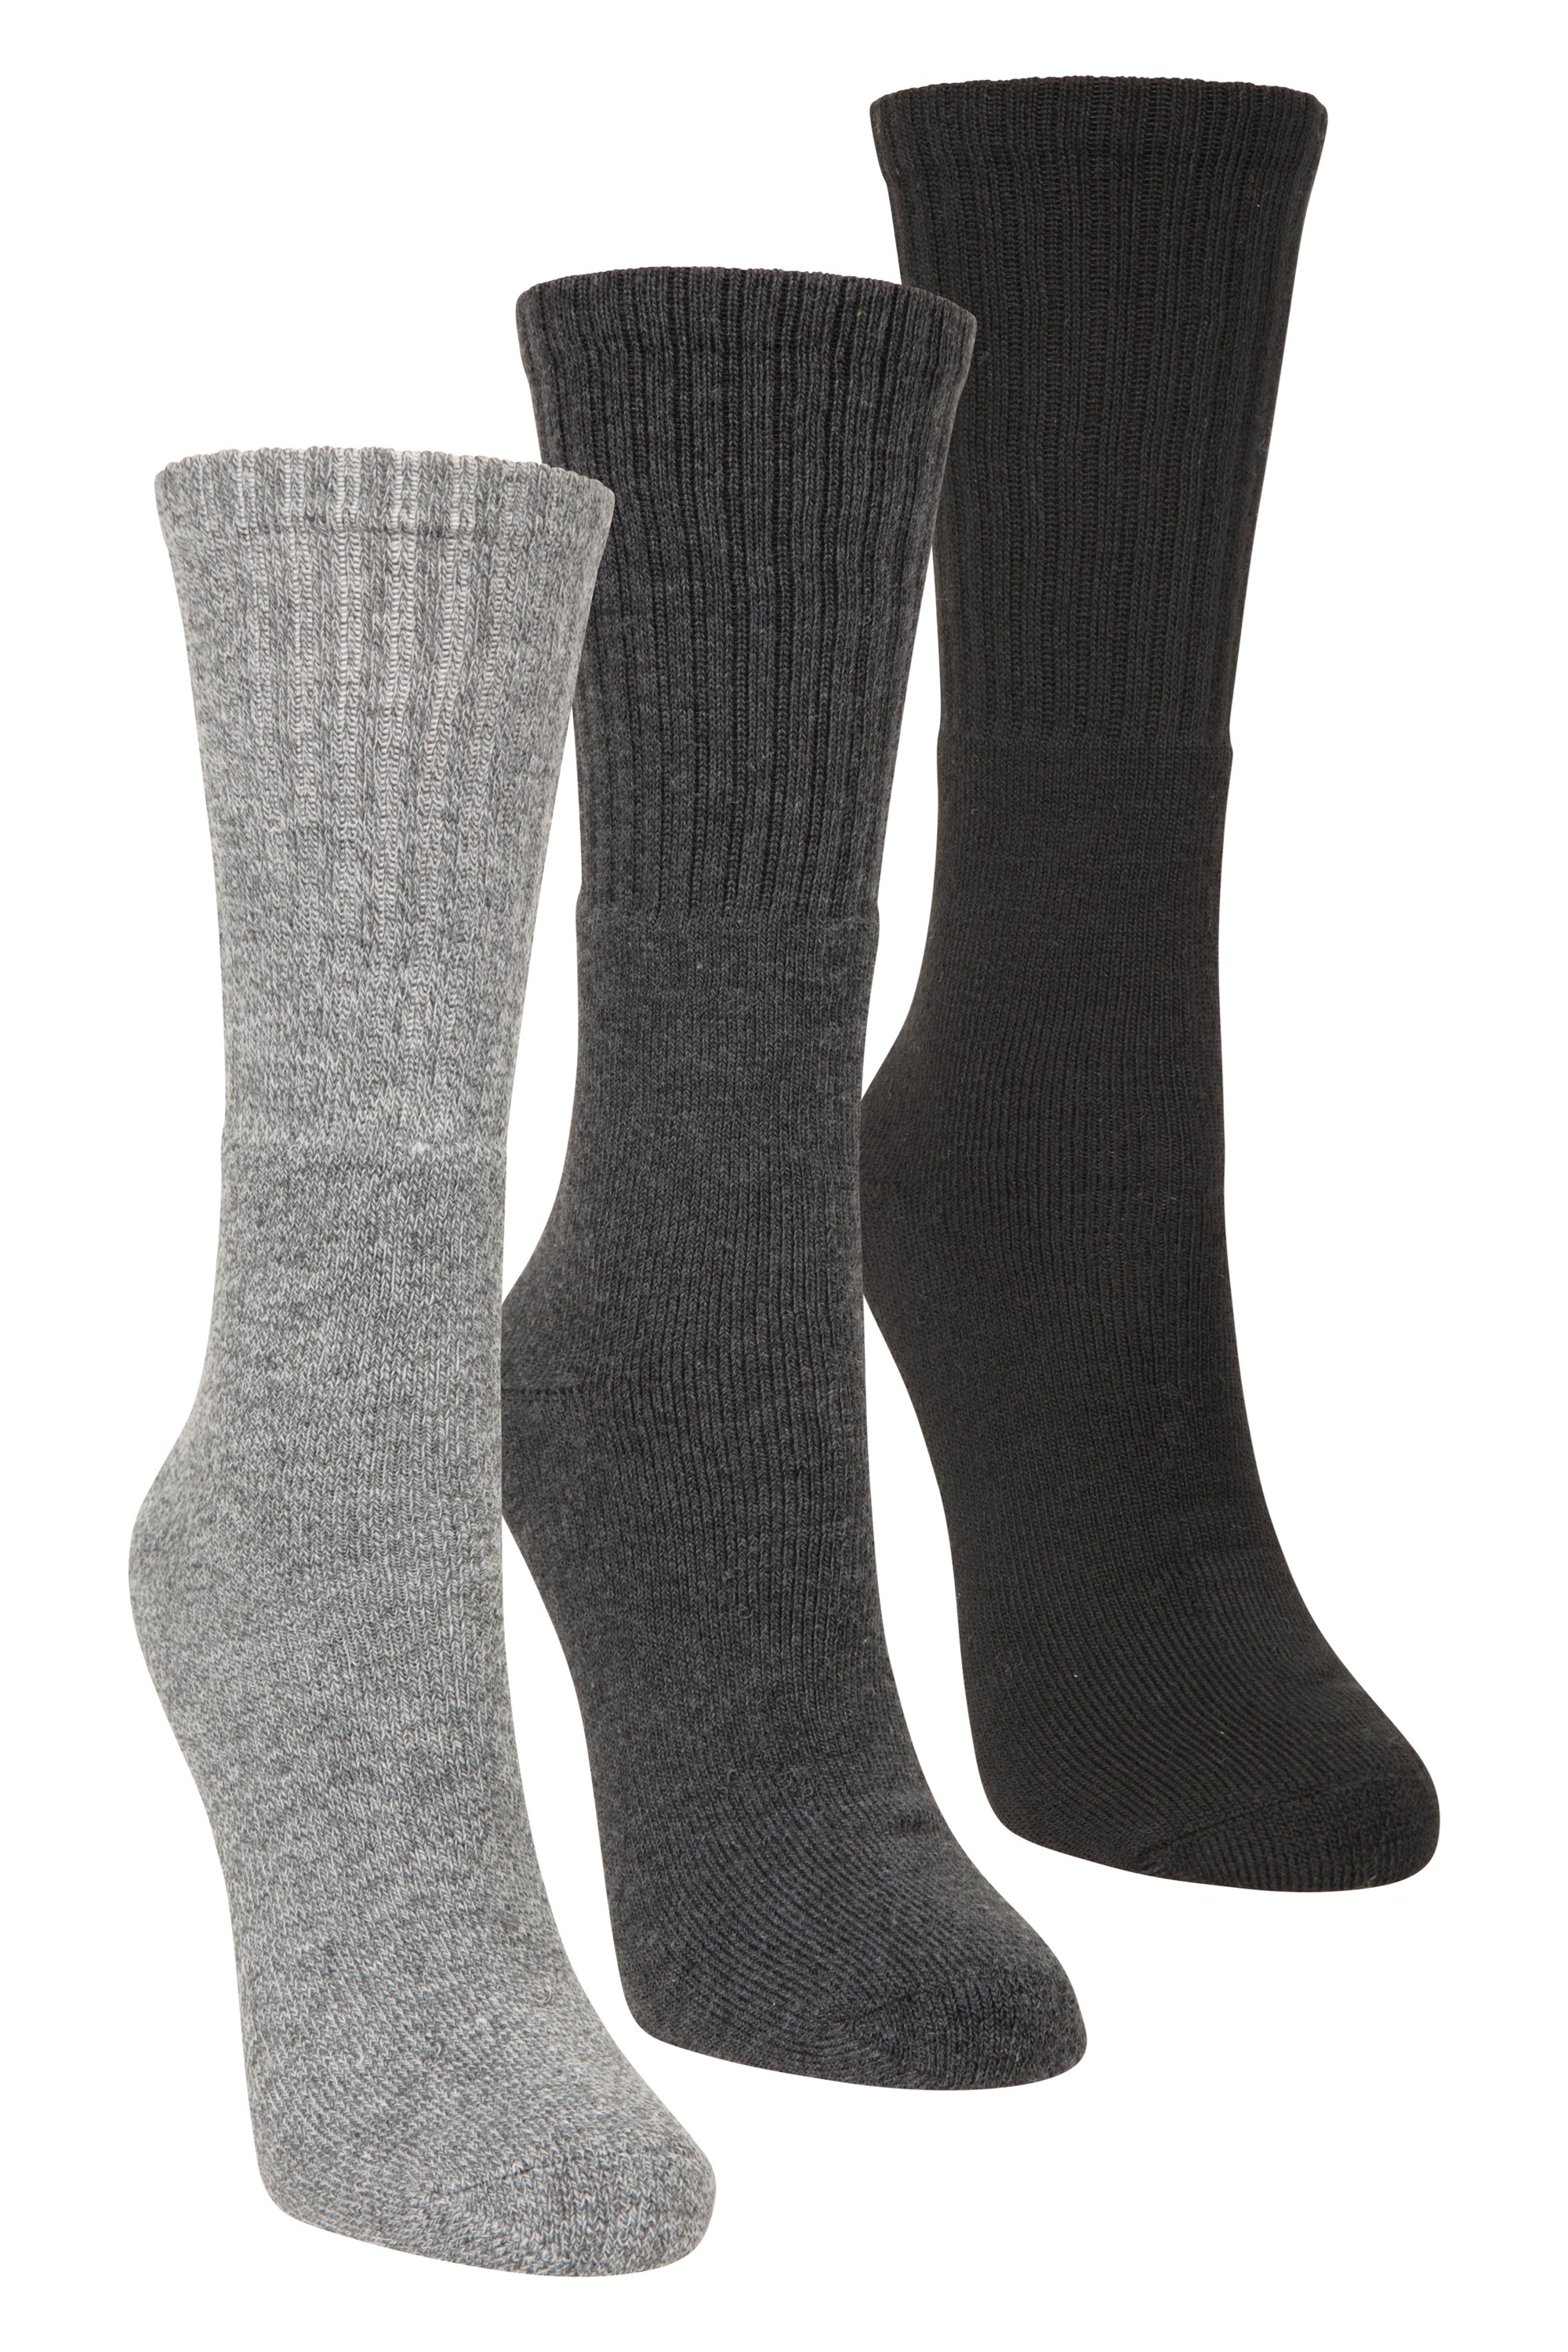 Outdoor Womens Walking Socks 3-pack - Grey